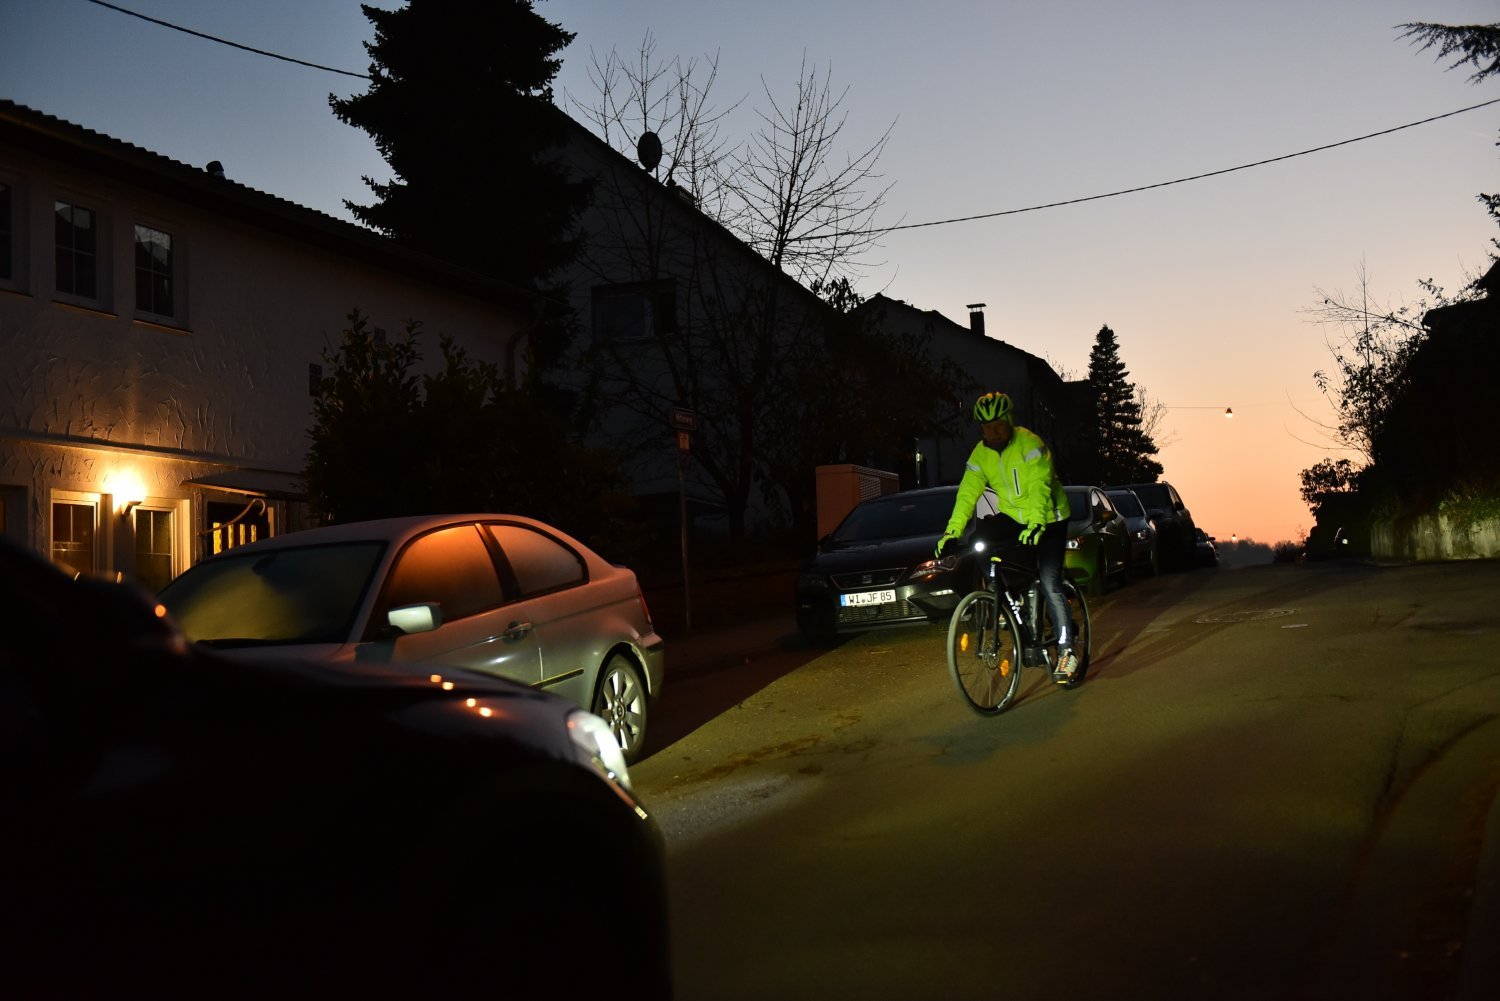 Sichtbarkeit beim Radfahren - Sicher durch die dunkle Jahreszeit!